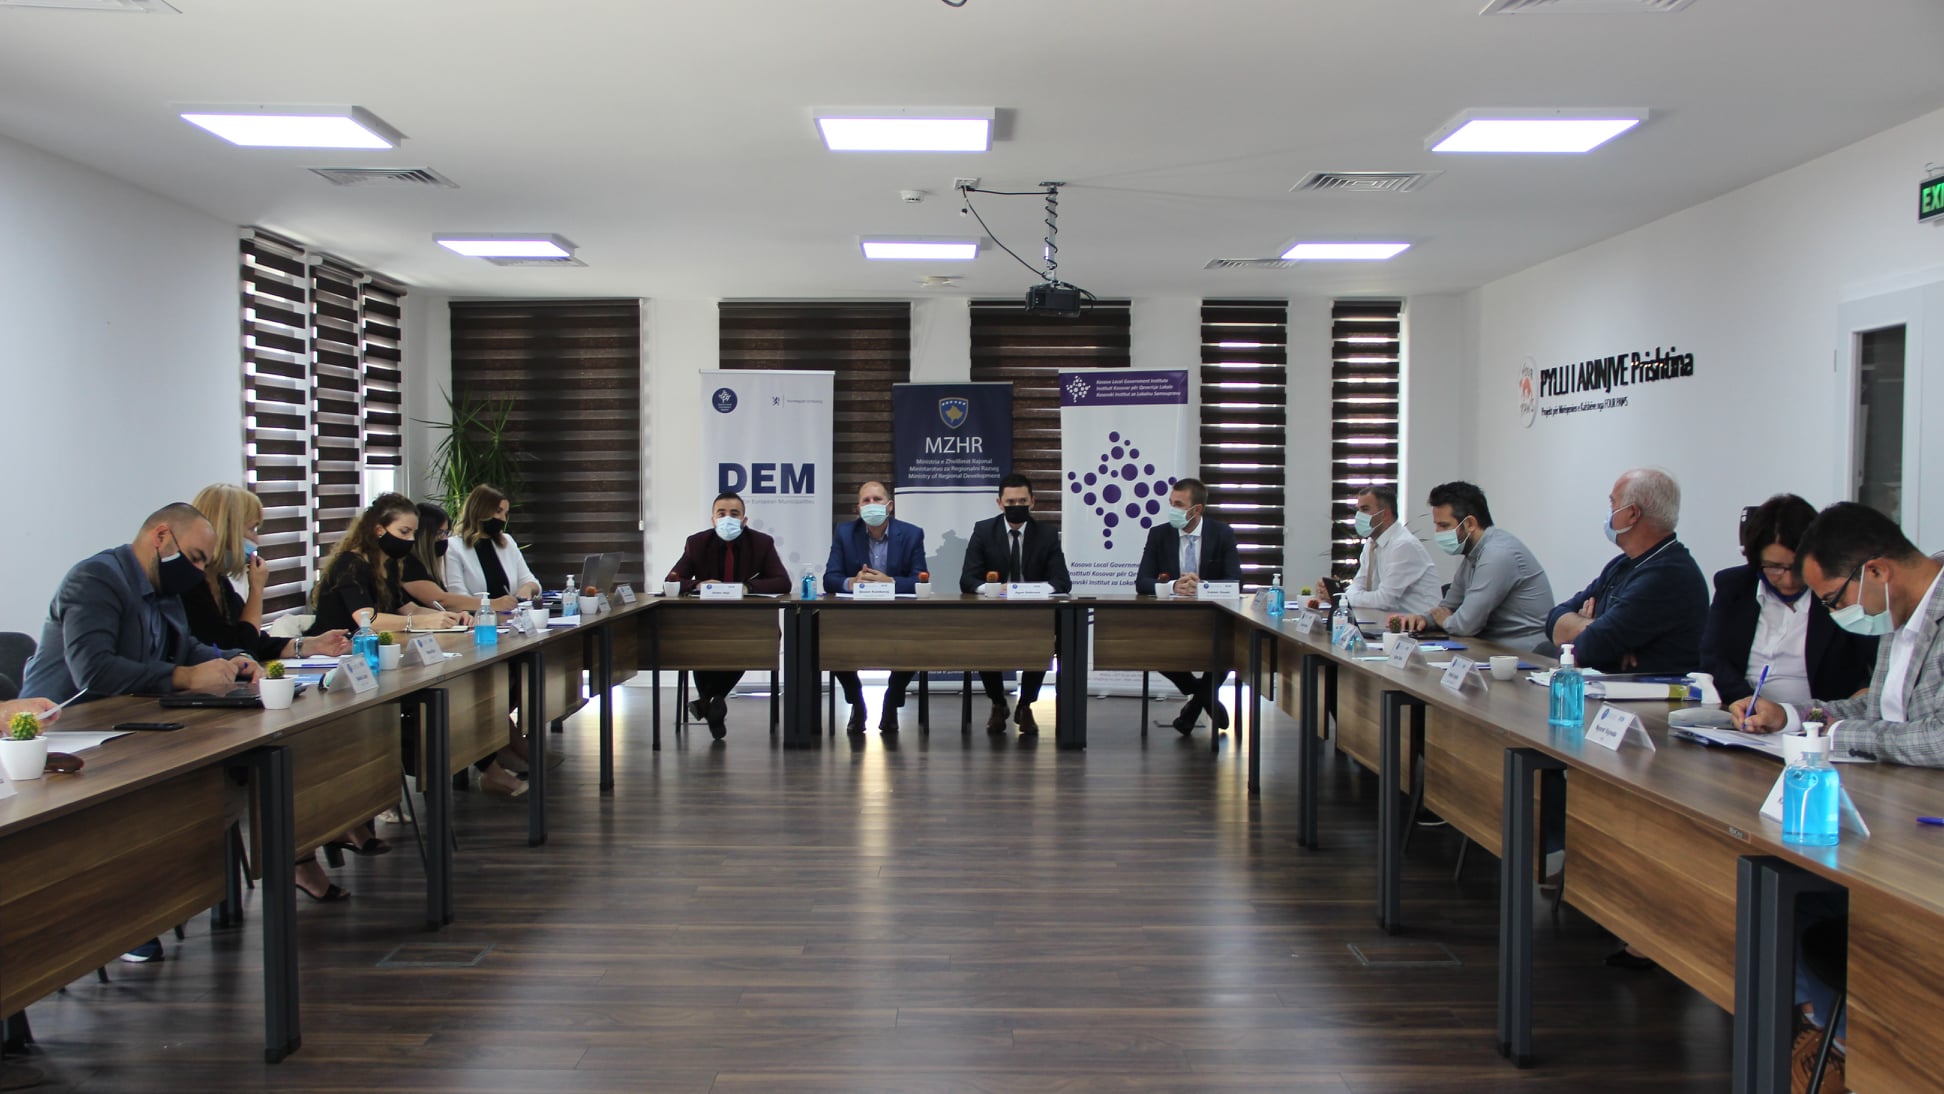 Ministria e Zhvillimit Rajonal (MZHR) nën  mbështetje të Instituti Kosovar për Qeverisje Lokale (KLGI)) organizoi punëtorinë e radhës lidhur me procesin e hartimit të Projektligjit për Zhvillim Rajonal.